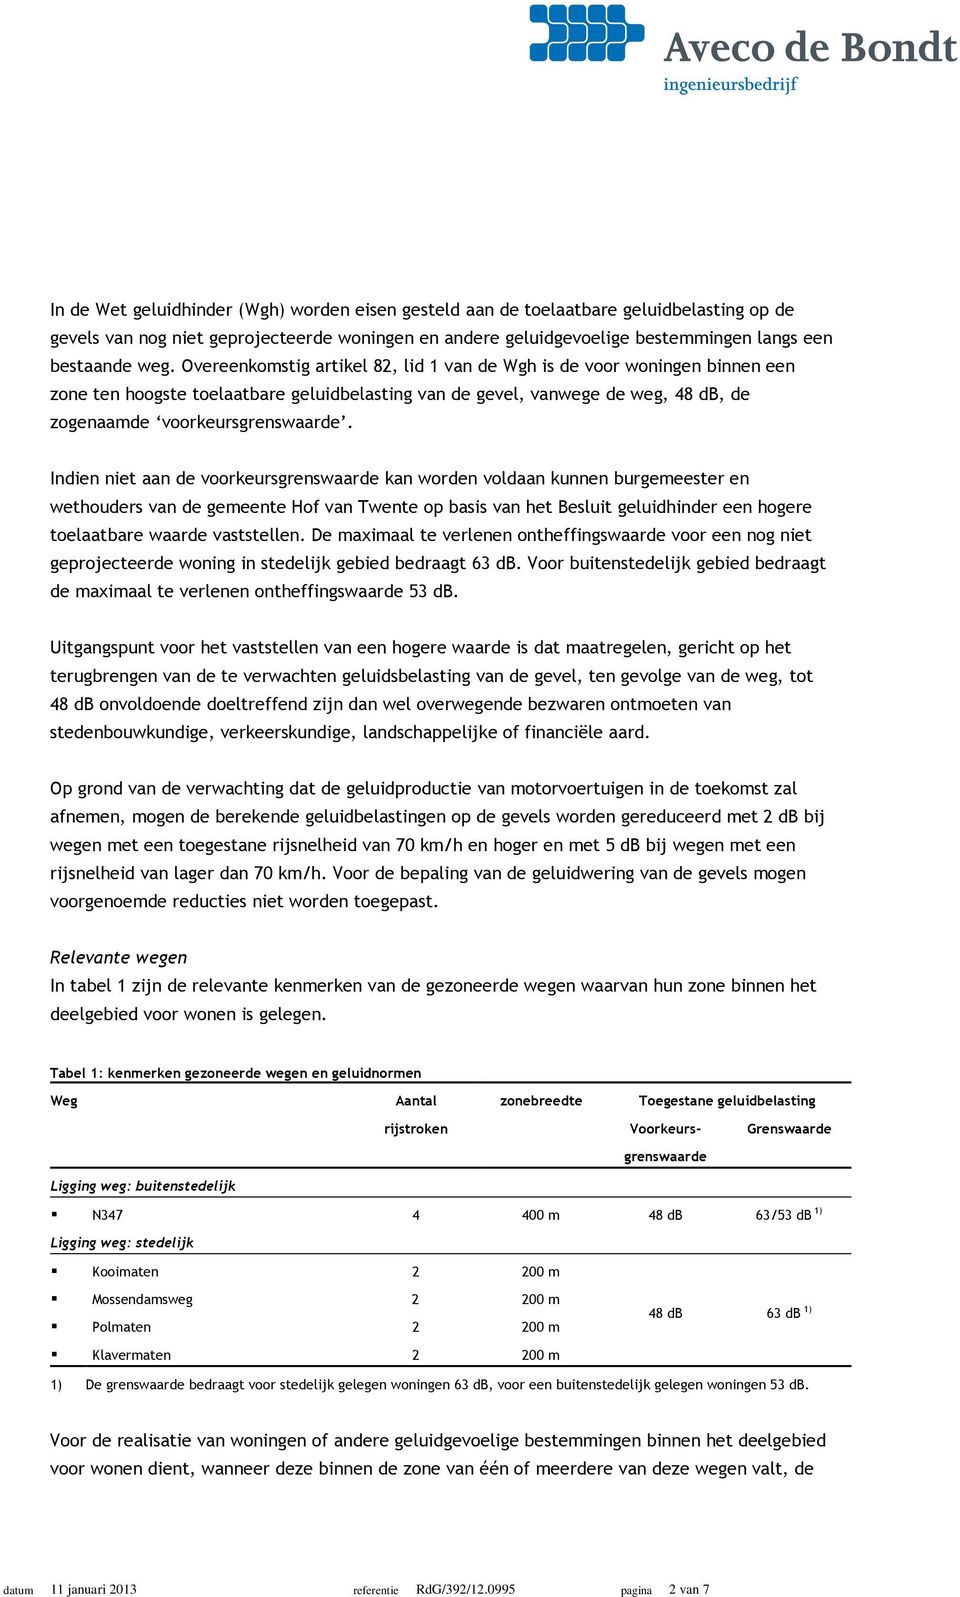 Indien niet aan de voorkeursgrenswaarde kan worden voldaan kunnen burgemeester en wethouders van de gemeente Hof van Twente op basis van het Besluit geluidhinder een hogere toelaatbare waarde